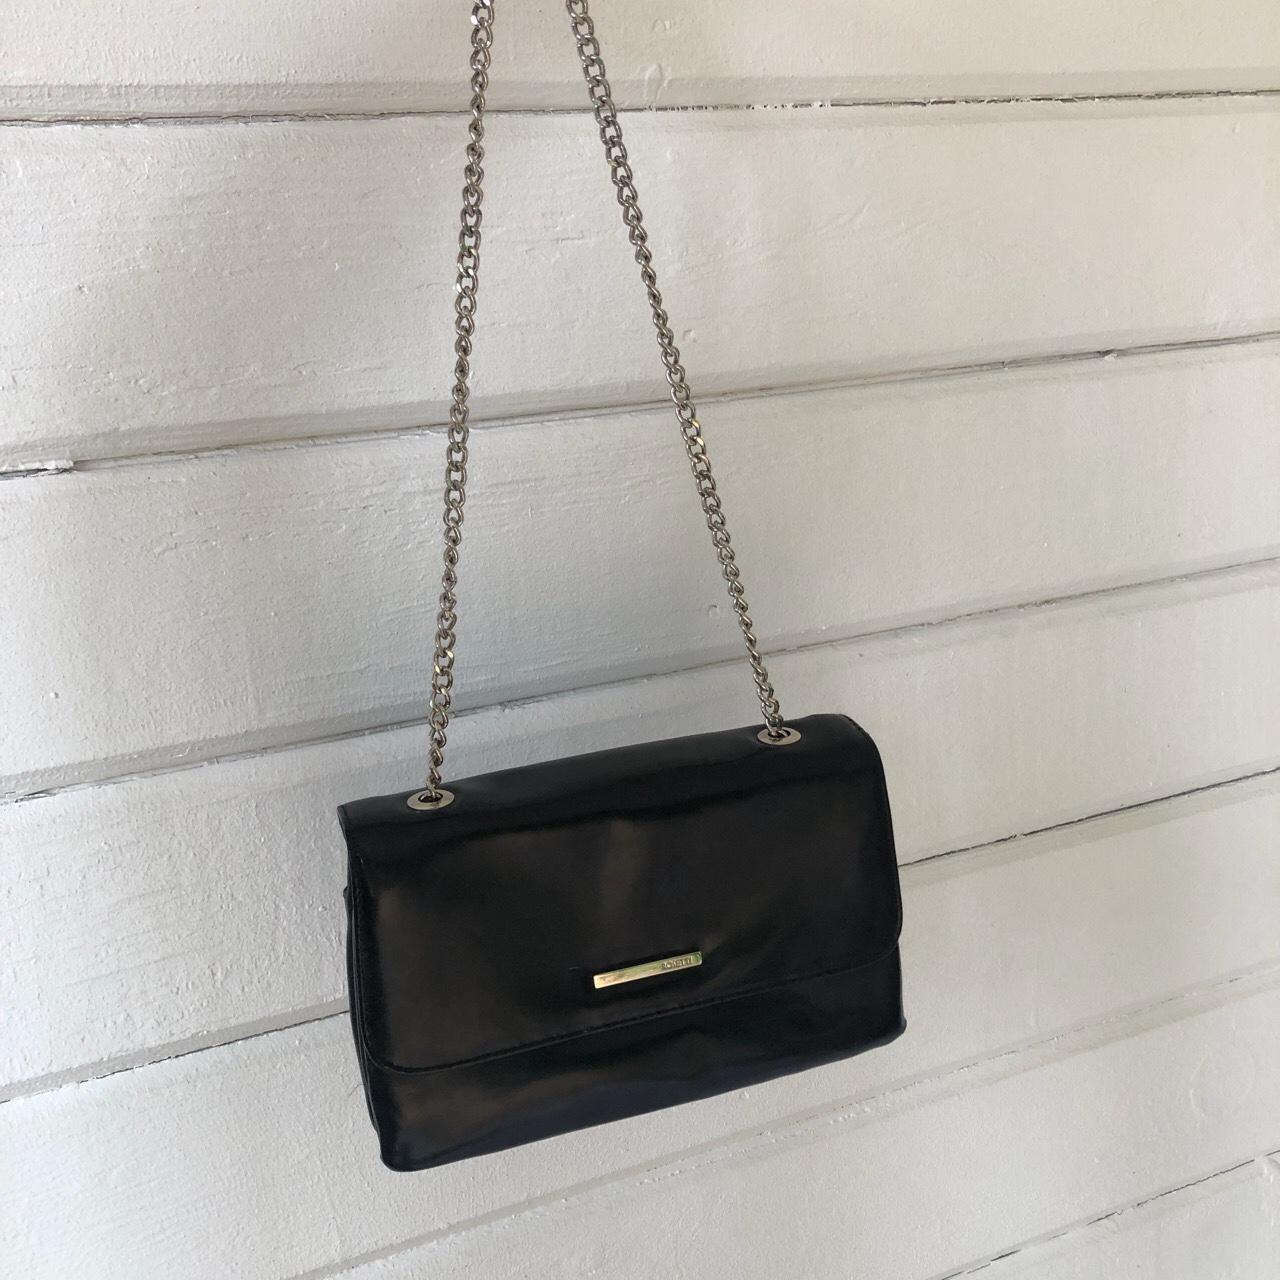 Forever 21 shiny black shoulder bag 🐈‍⬛ Super cute, - Depop